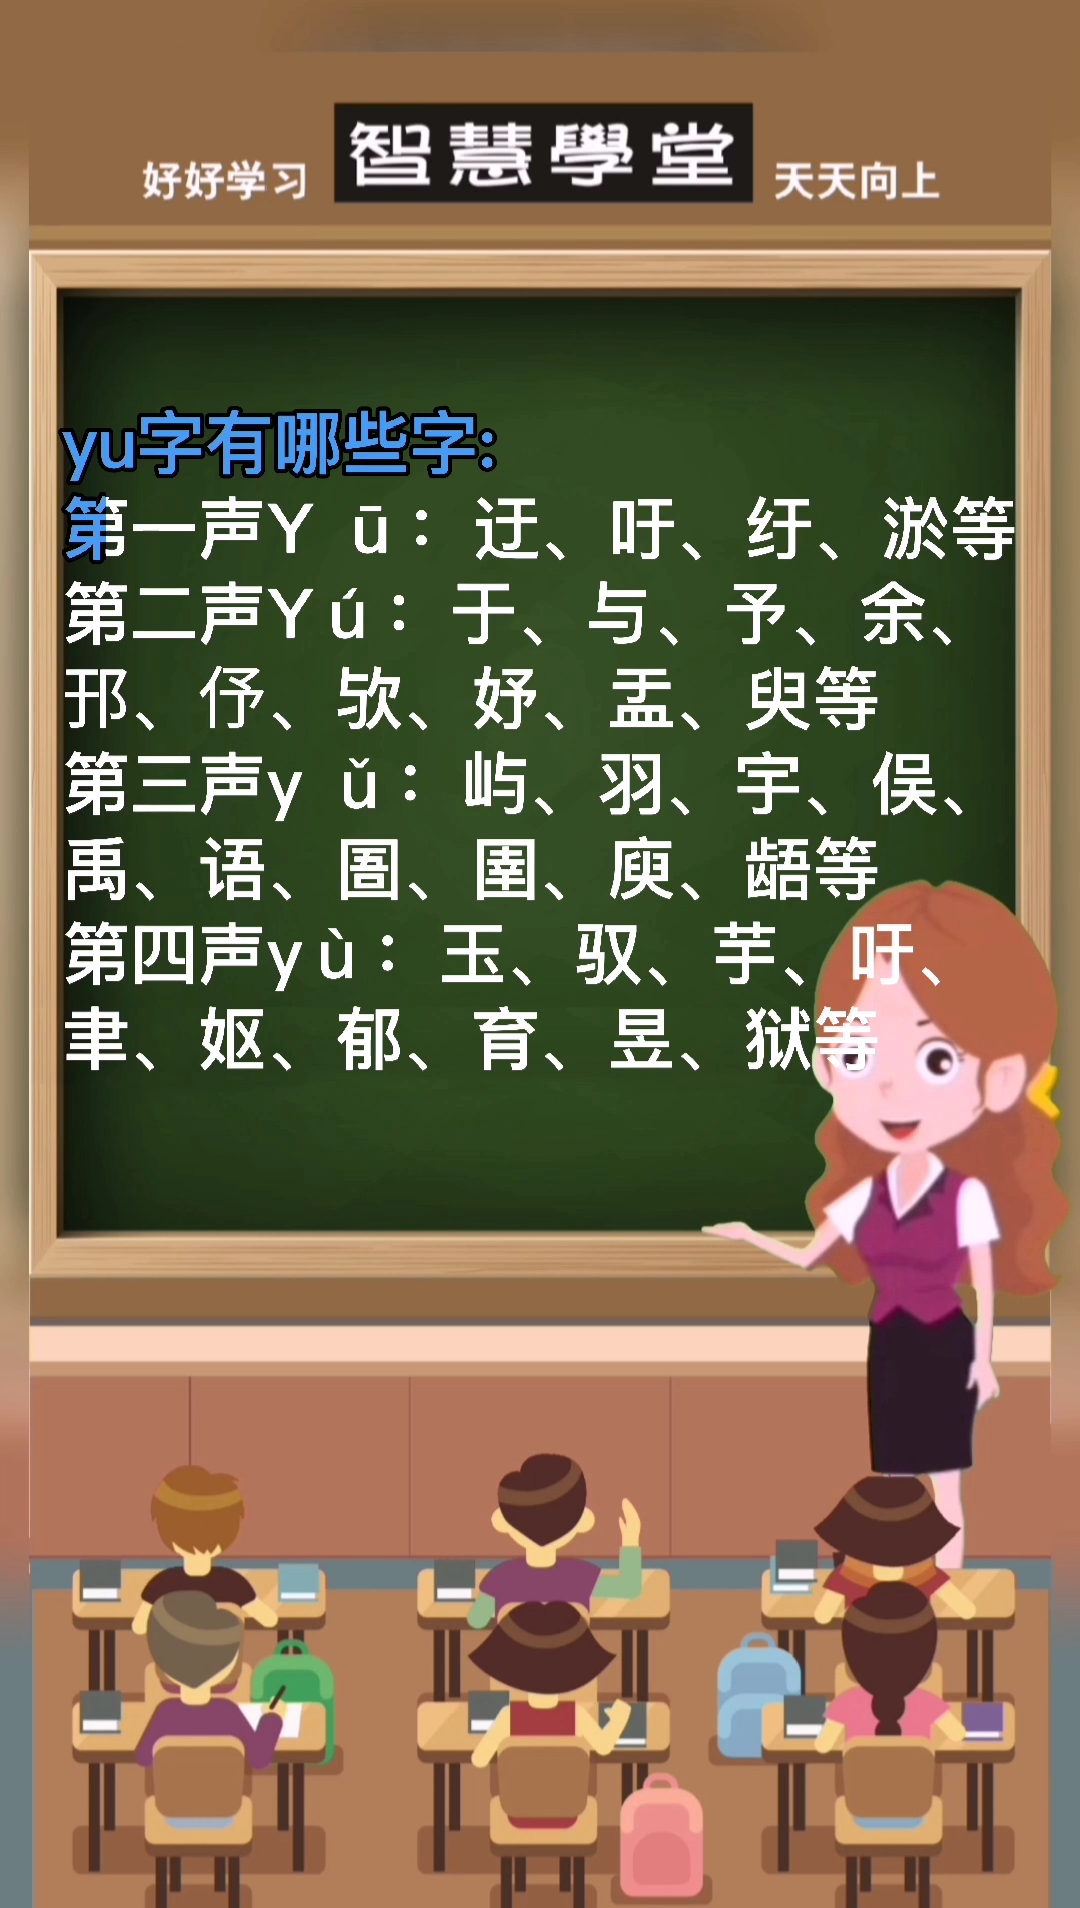 yu的字有哪些呢?